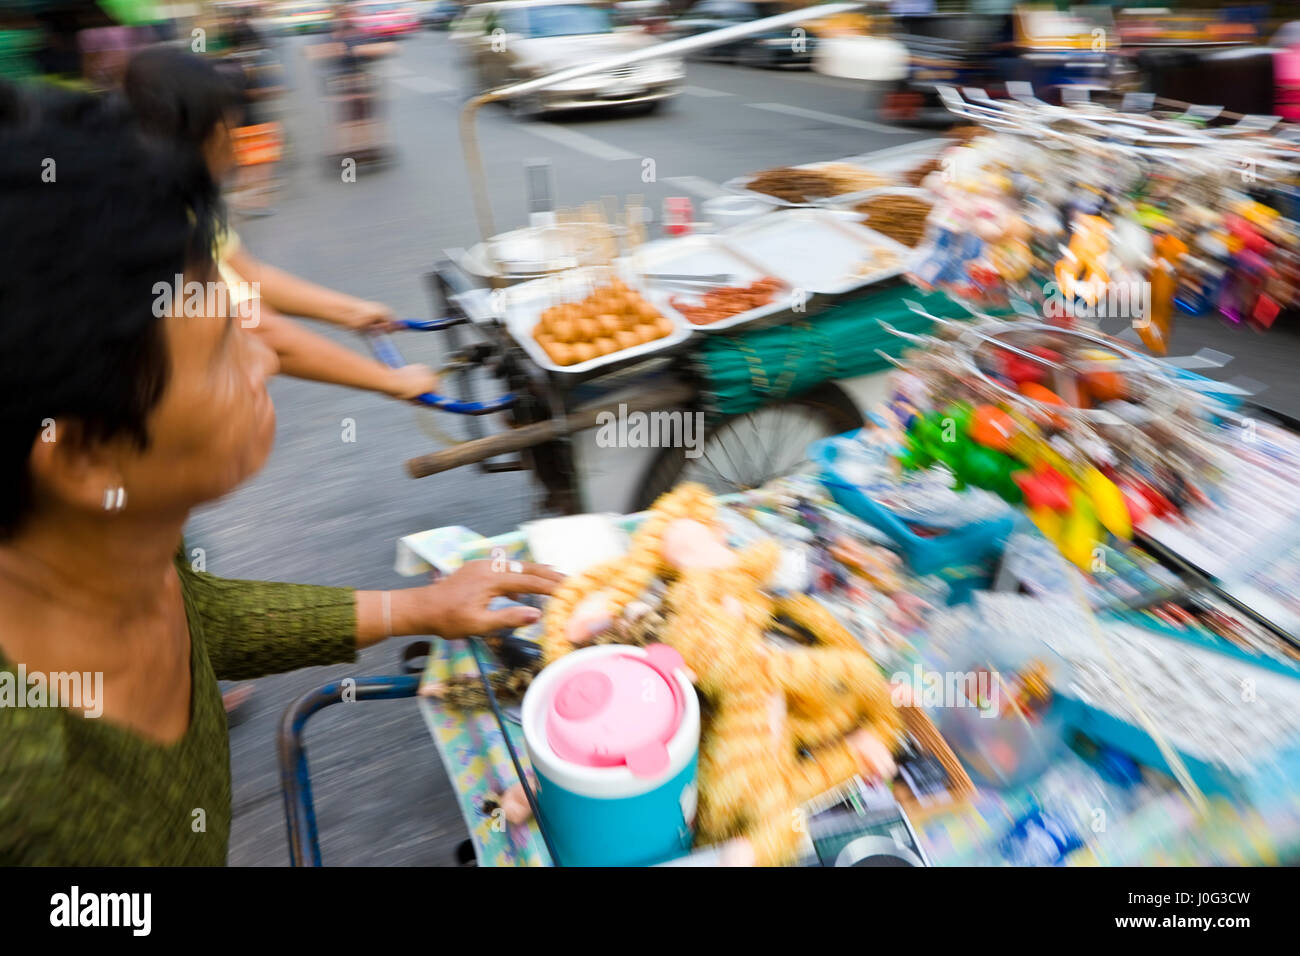 Straße Wagen verkaufen Snacks & Spielzeug, Bangkok, Thailand Stockfoto